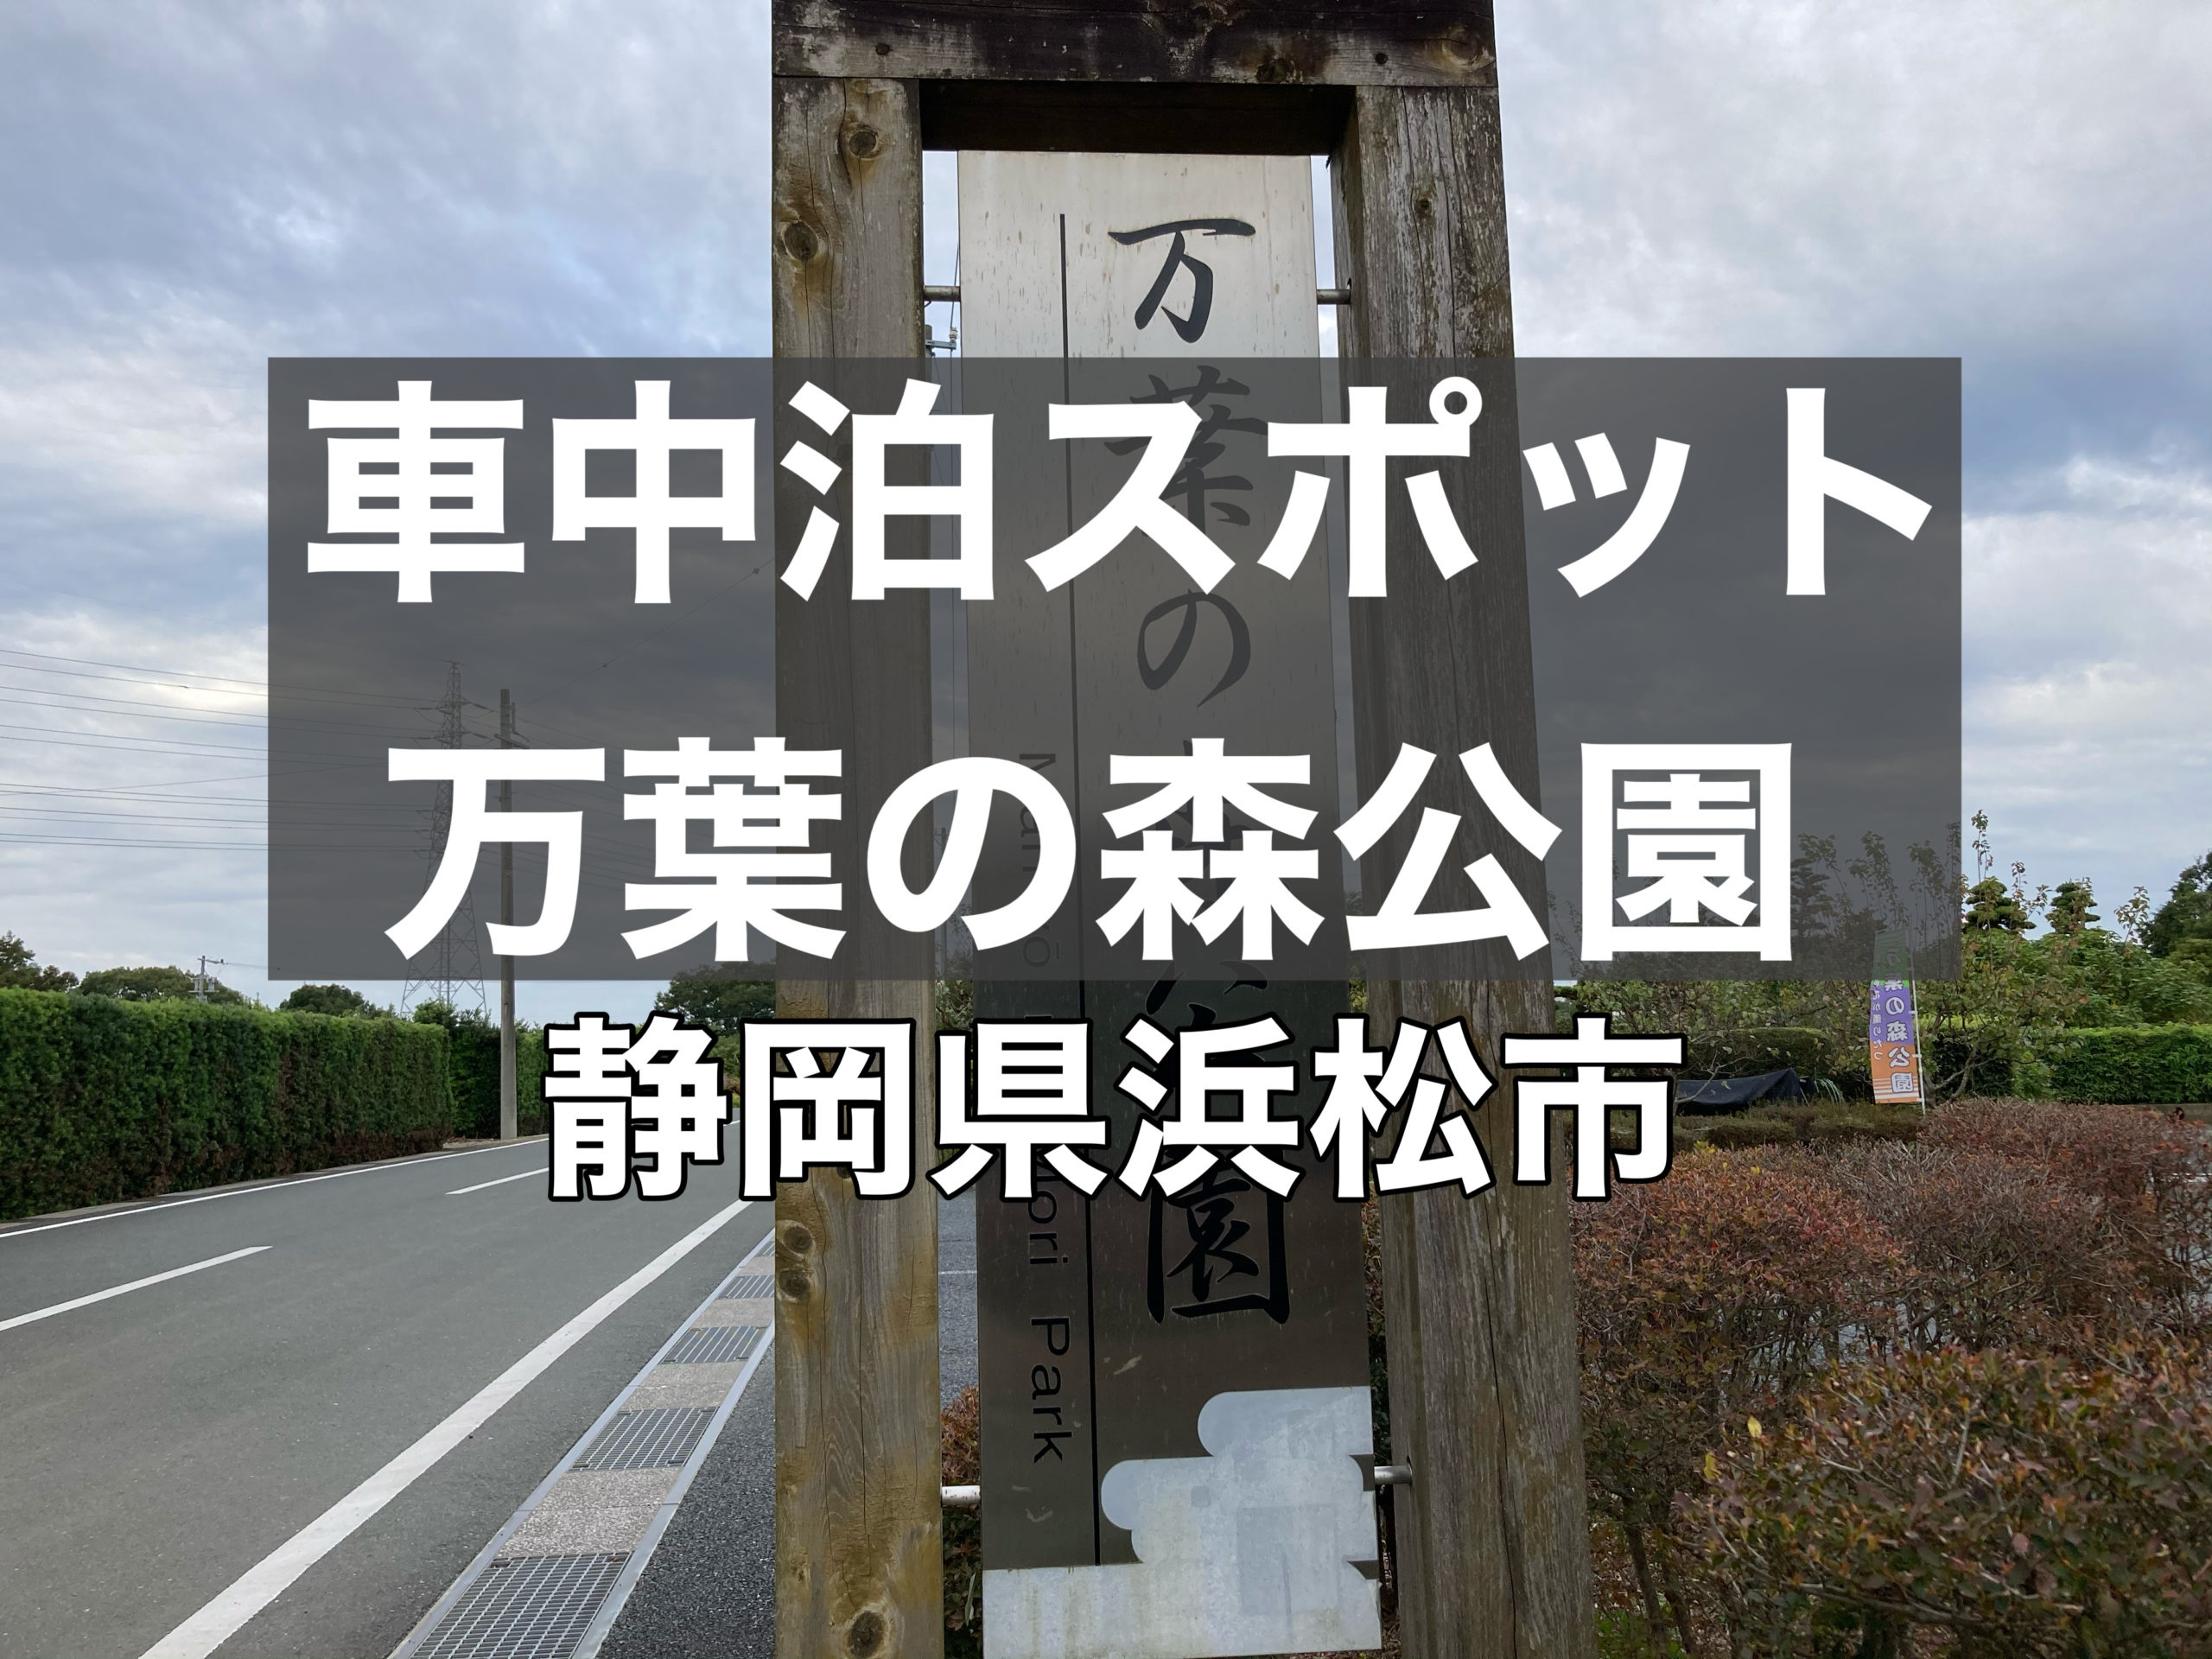 車中泊スポット 静岡県浜松市にある 万葉の森公園 で車中泊 無職夫婦バンライフへの挑戦